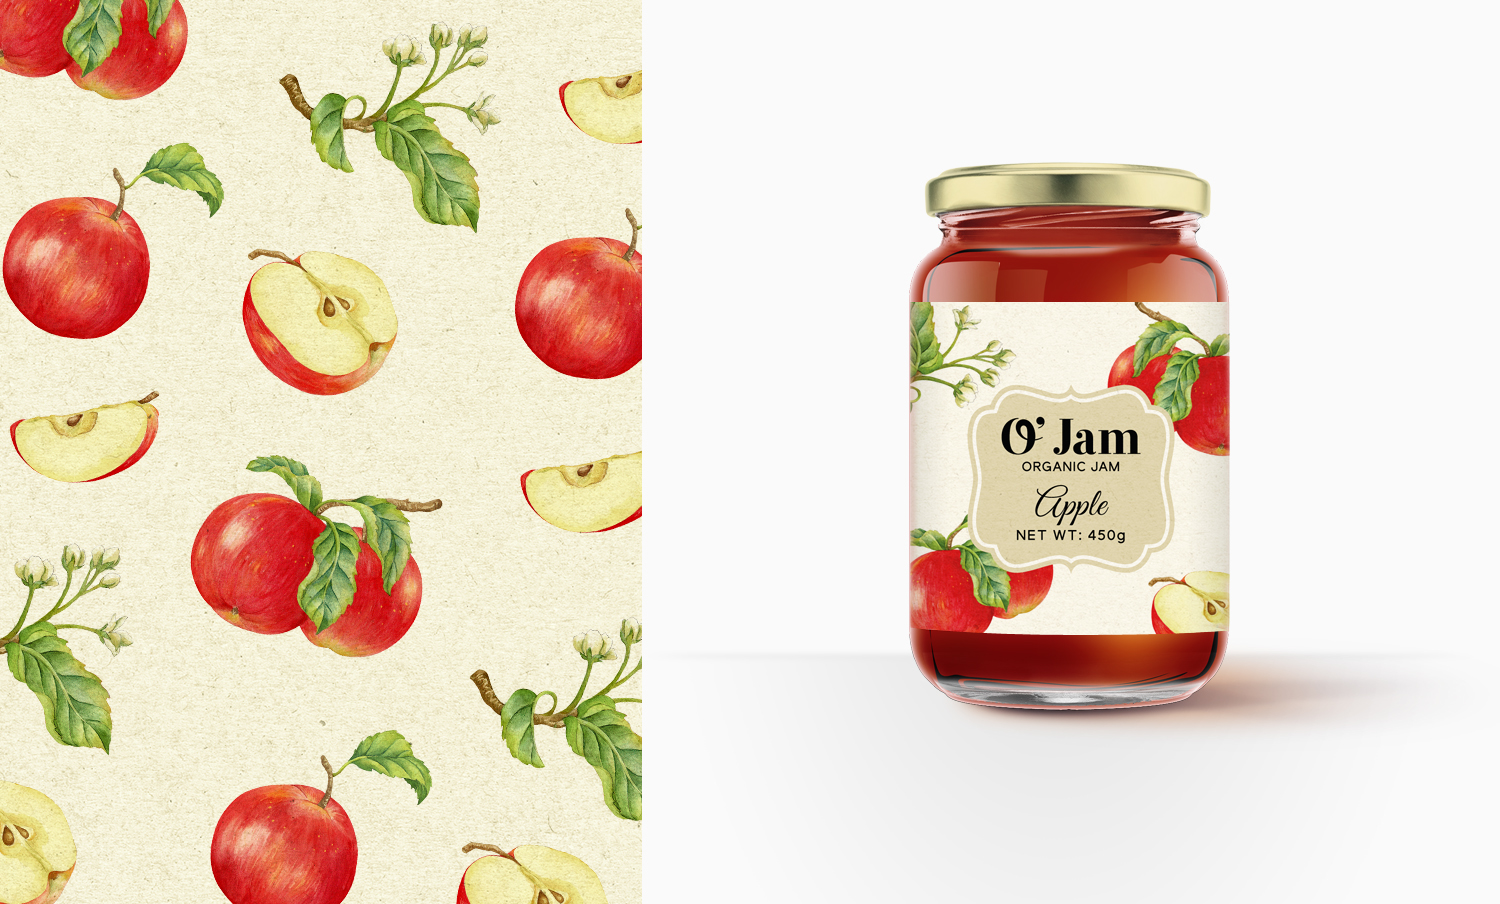 O' Jam果酱包装设计